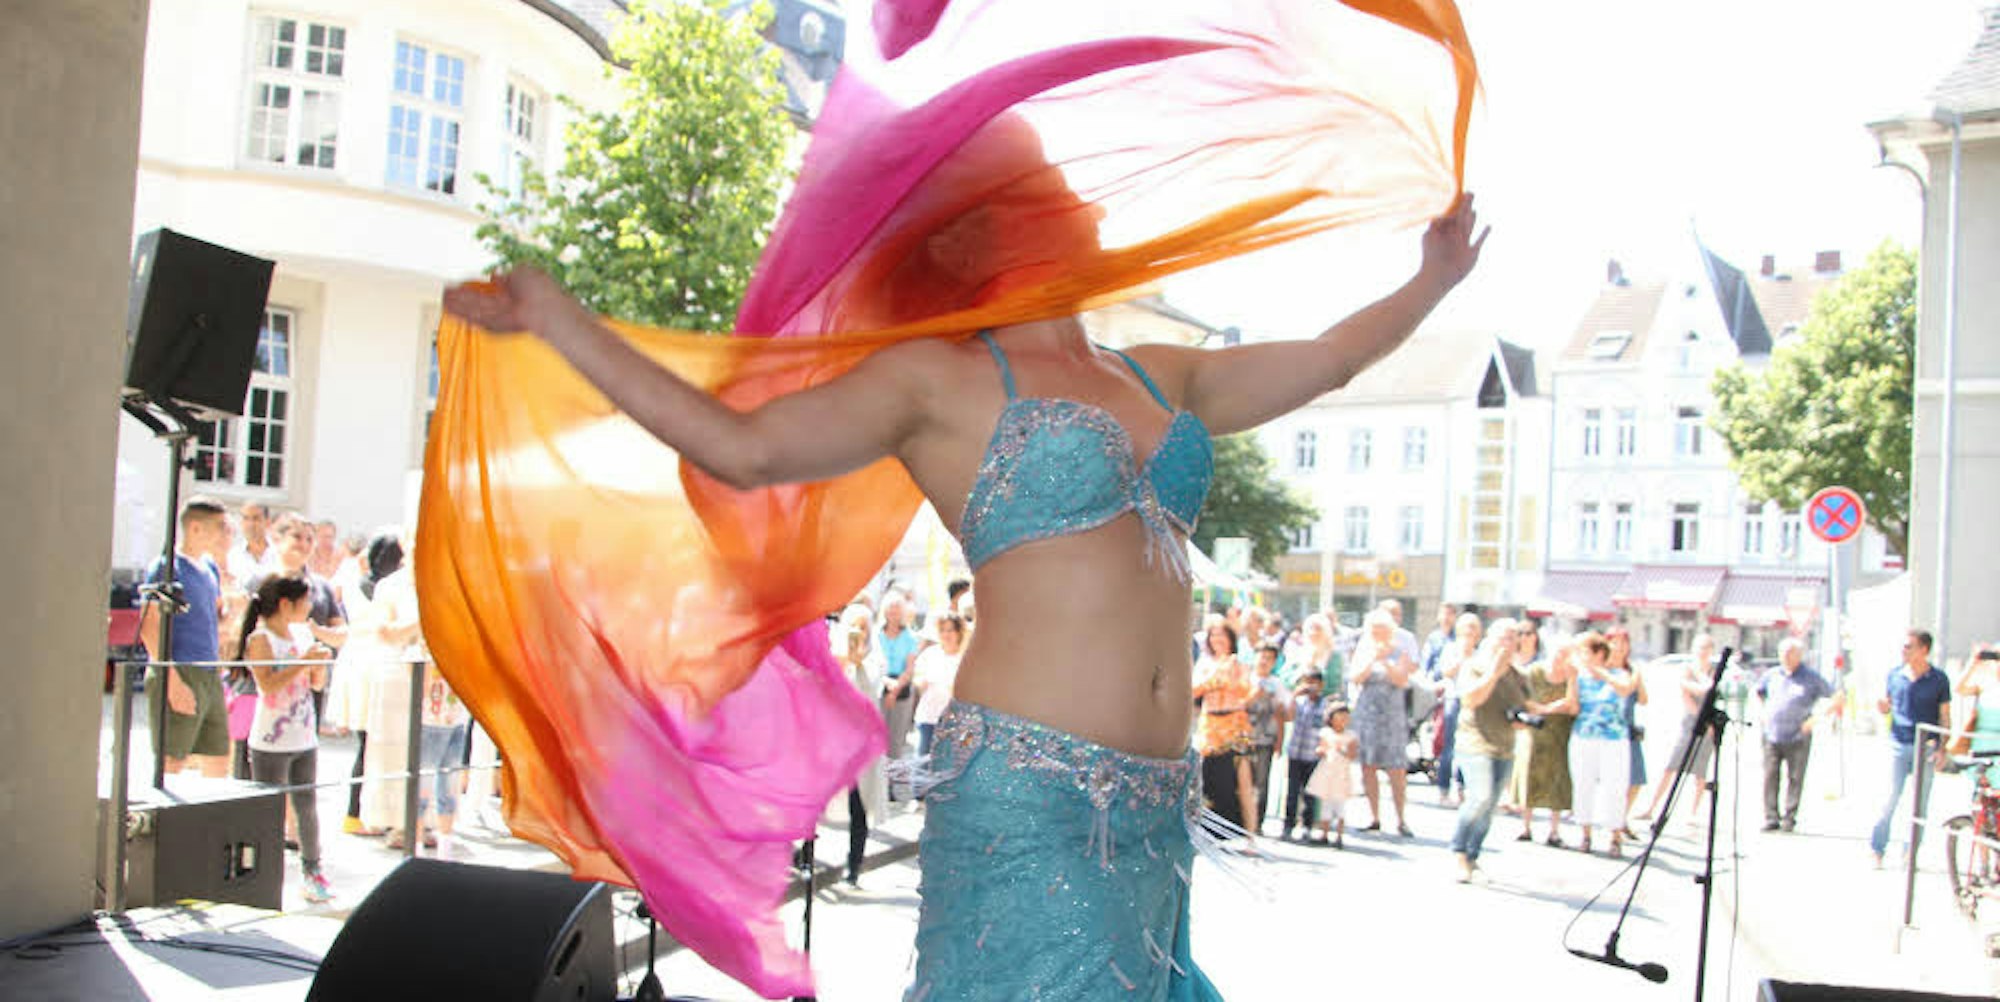 Claudia Lankeit von der Tanzschule Bahija zeigte beim Vielfaltfest in Hennef, bei dem Menschen aus vielen Teilen der Welt zusammenkamen, einen Schleiertanz.